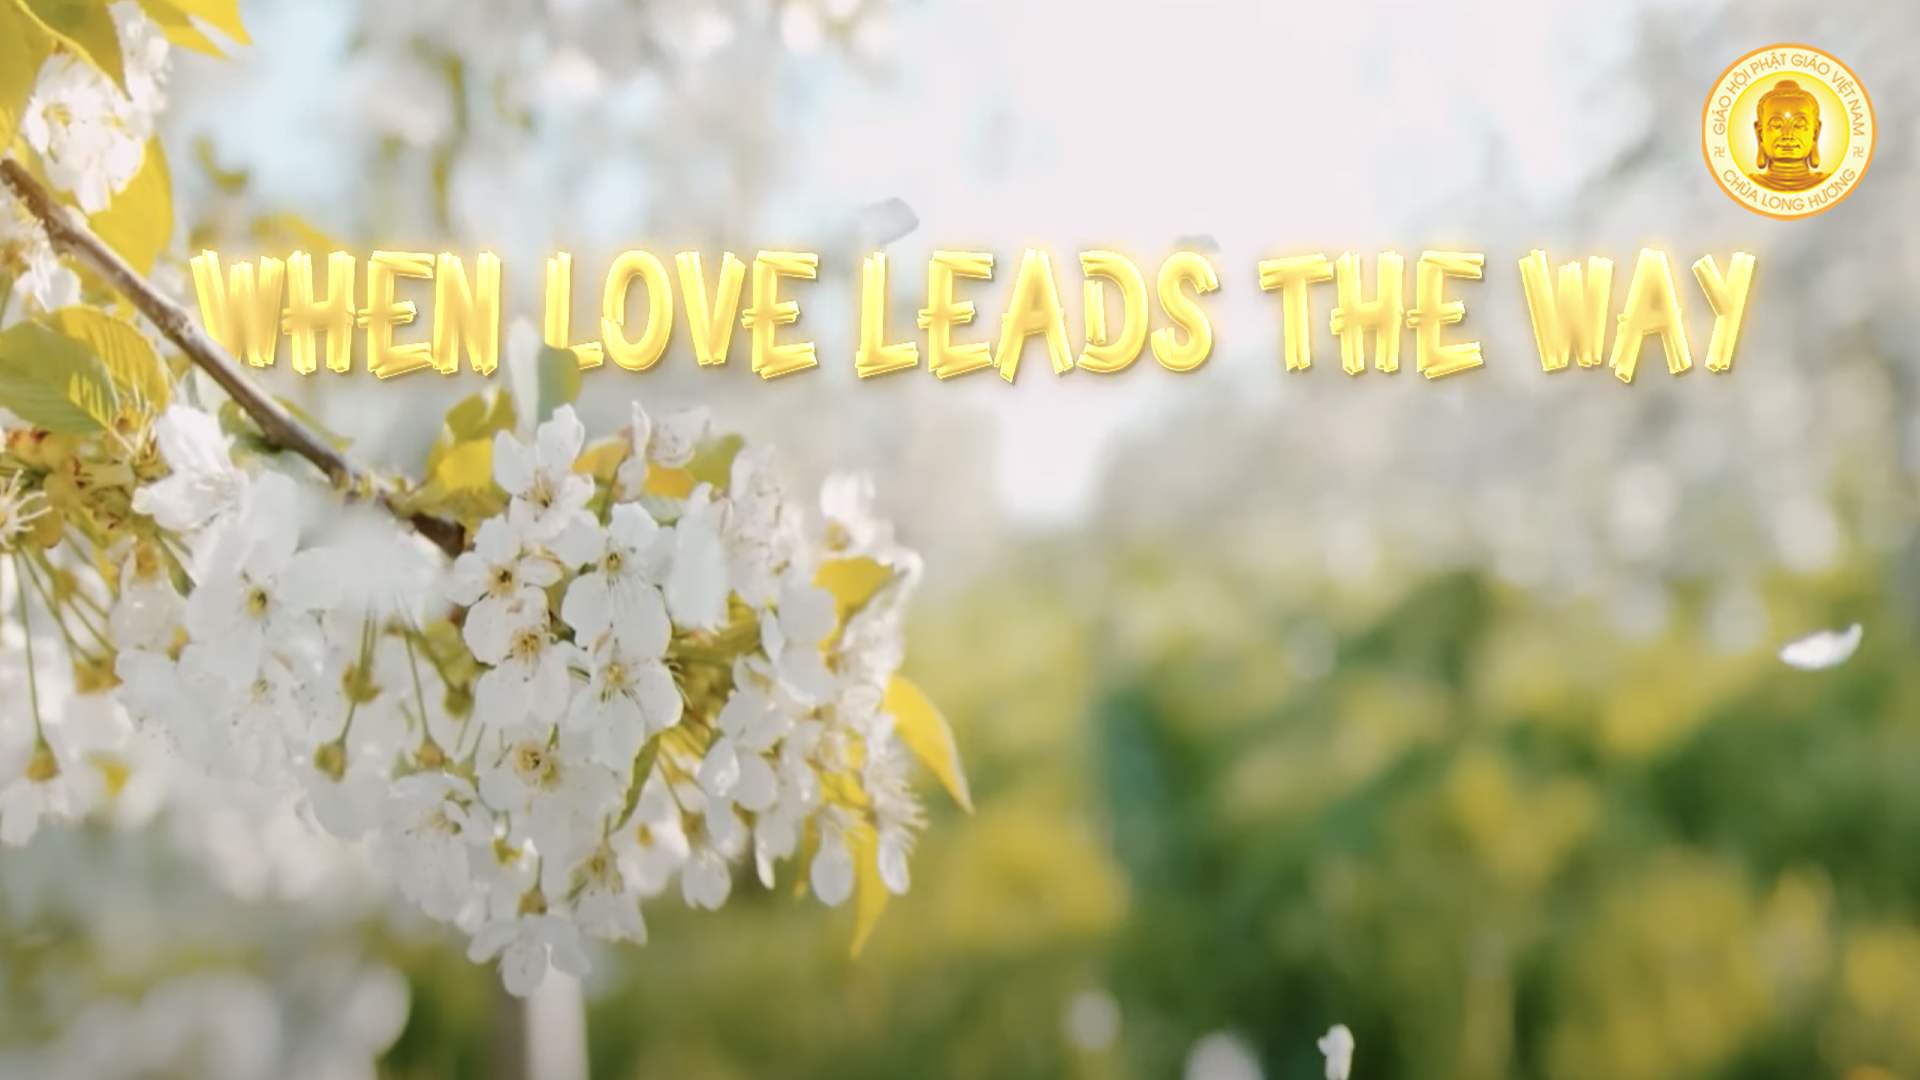 WHEN LOVE LEADS THE WAY | English sing-along | KHI YÊU THƯƠNG DẪN LỐI (T.S. VÔ TRỤ)